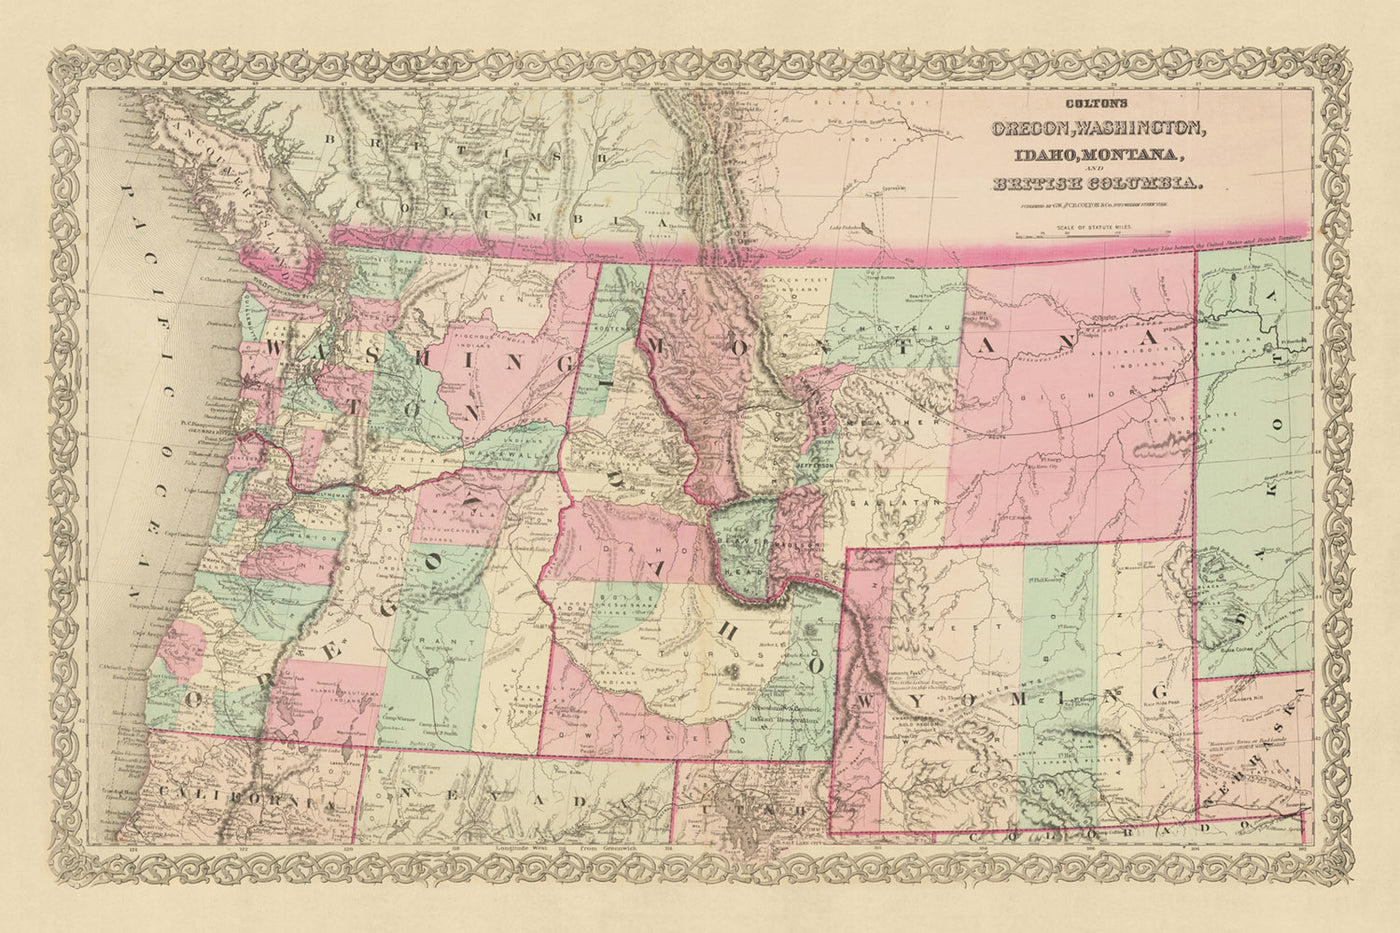 Alte Karte des pazifischen Nordwestens von JH Colton, 1868: Portland, Seattle, Boise, Helena, Cheyenne